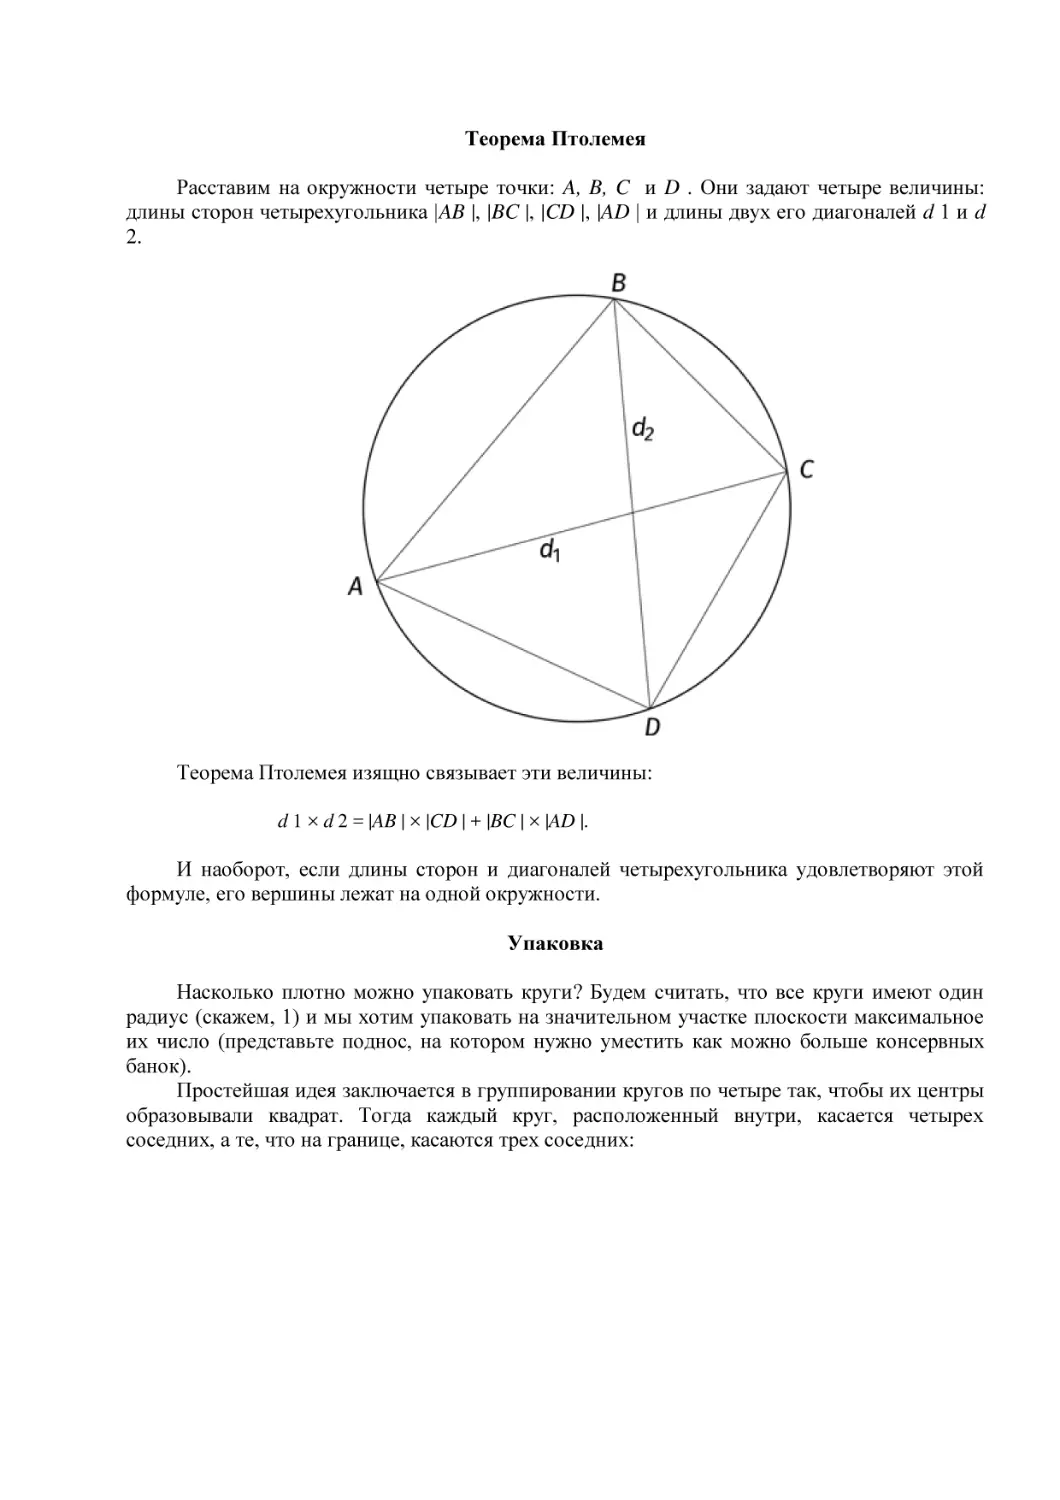 Теорема Птолемея
Упаковка